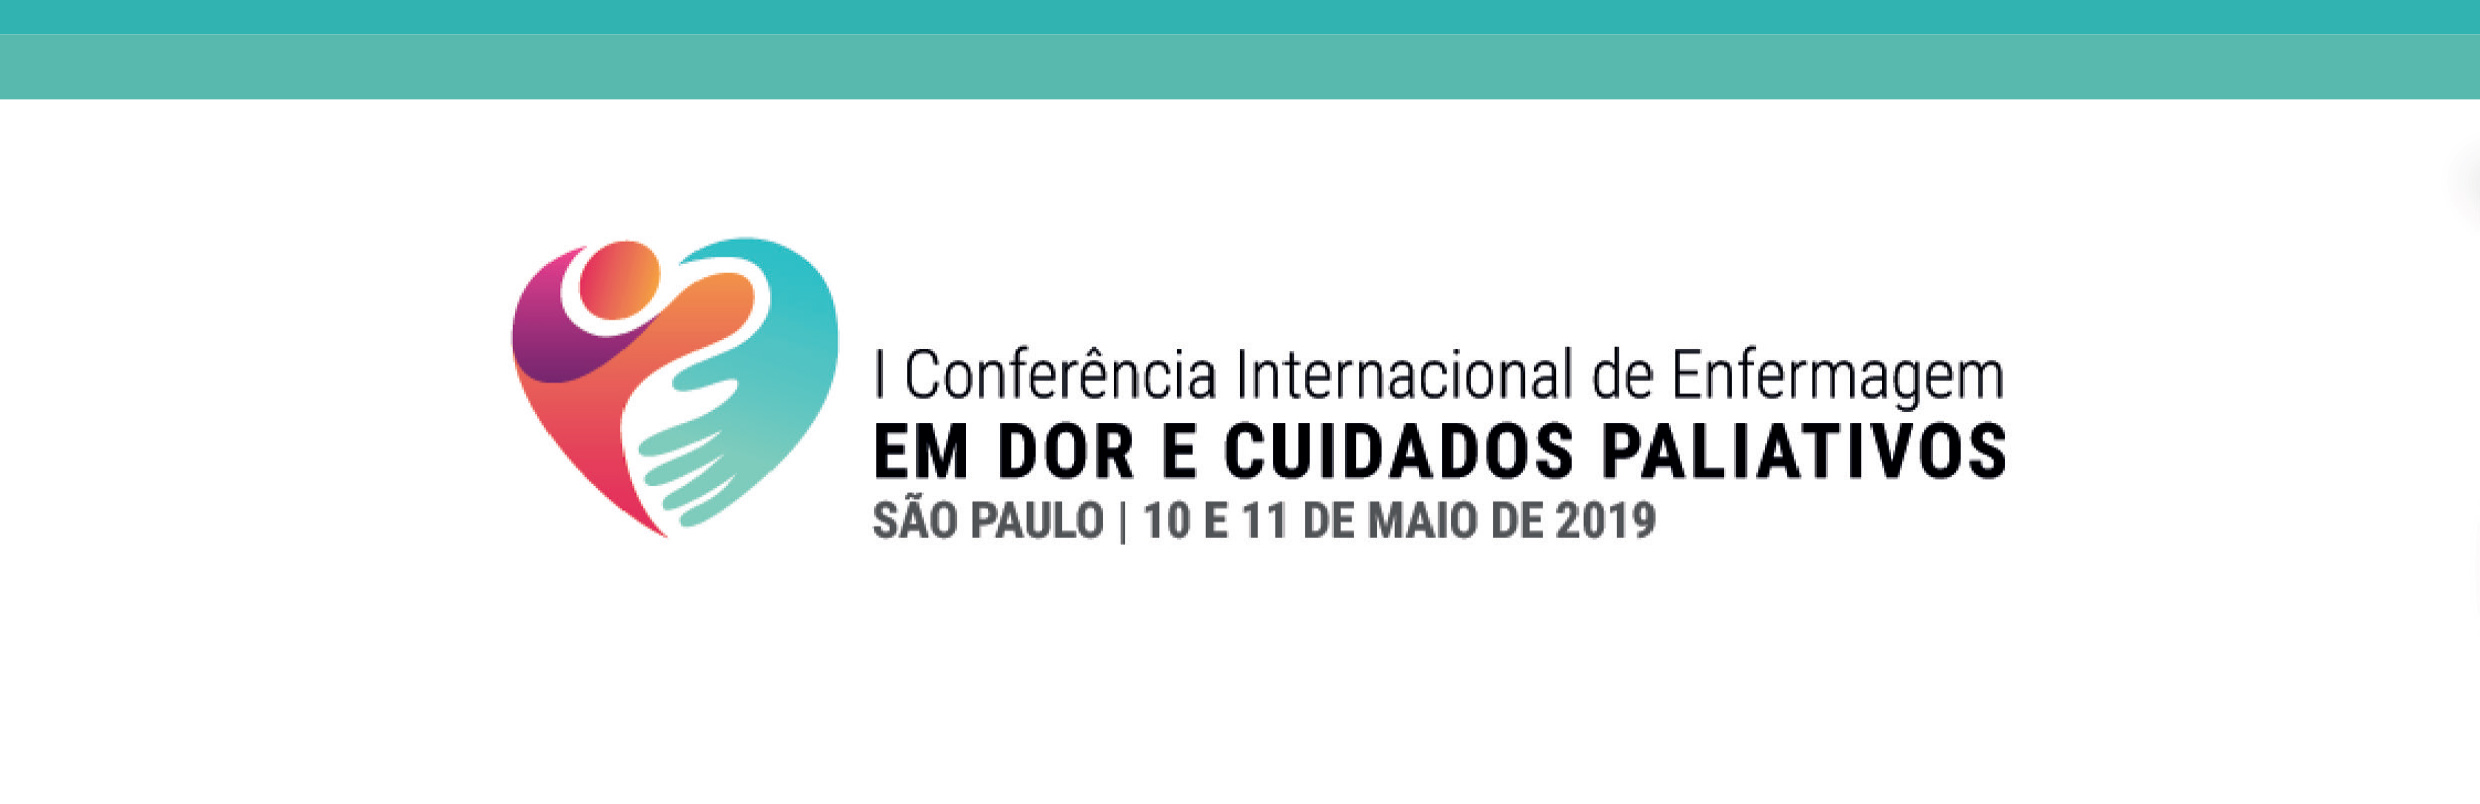 I Conferência Internacional de Enfermagem em Dor e Cuidados Paliativos